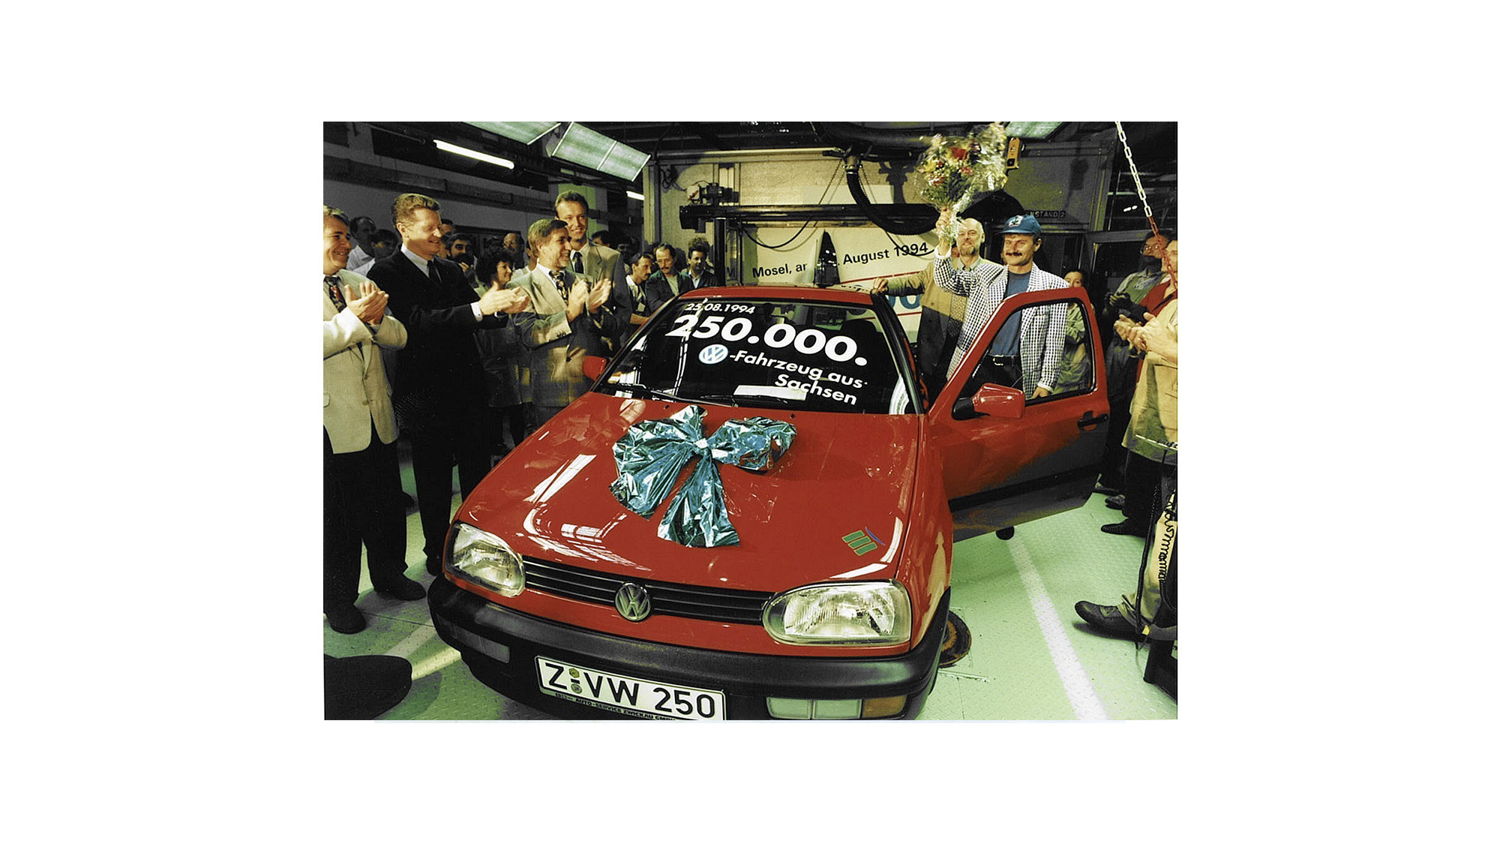 Agosto de 1994: El auto 250,000 sale de la línea de ensamblado.